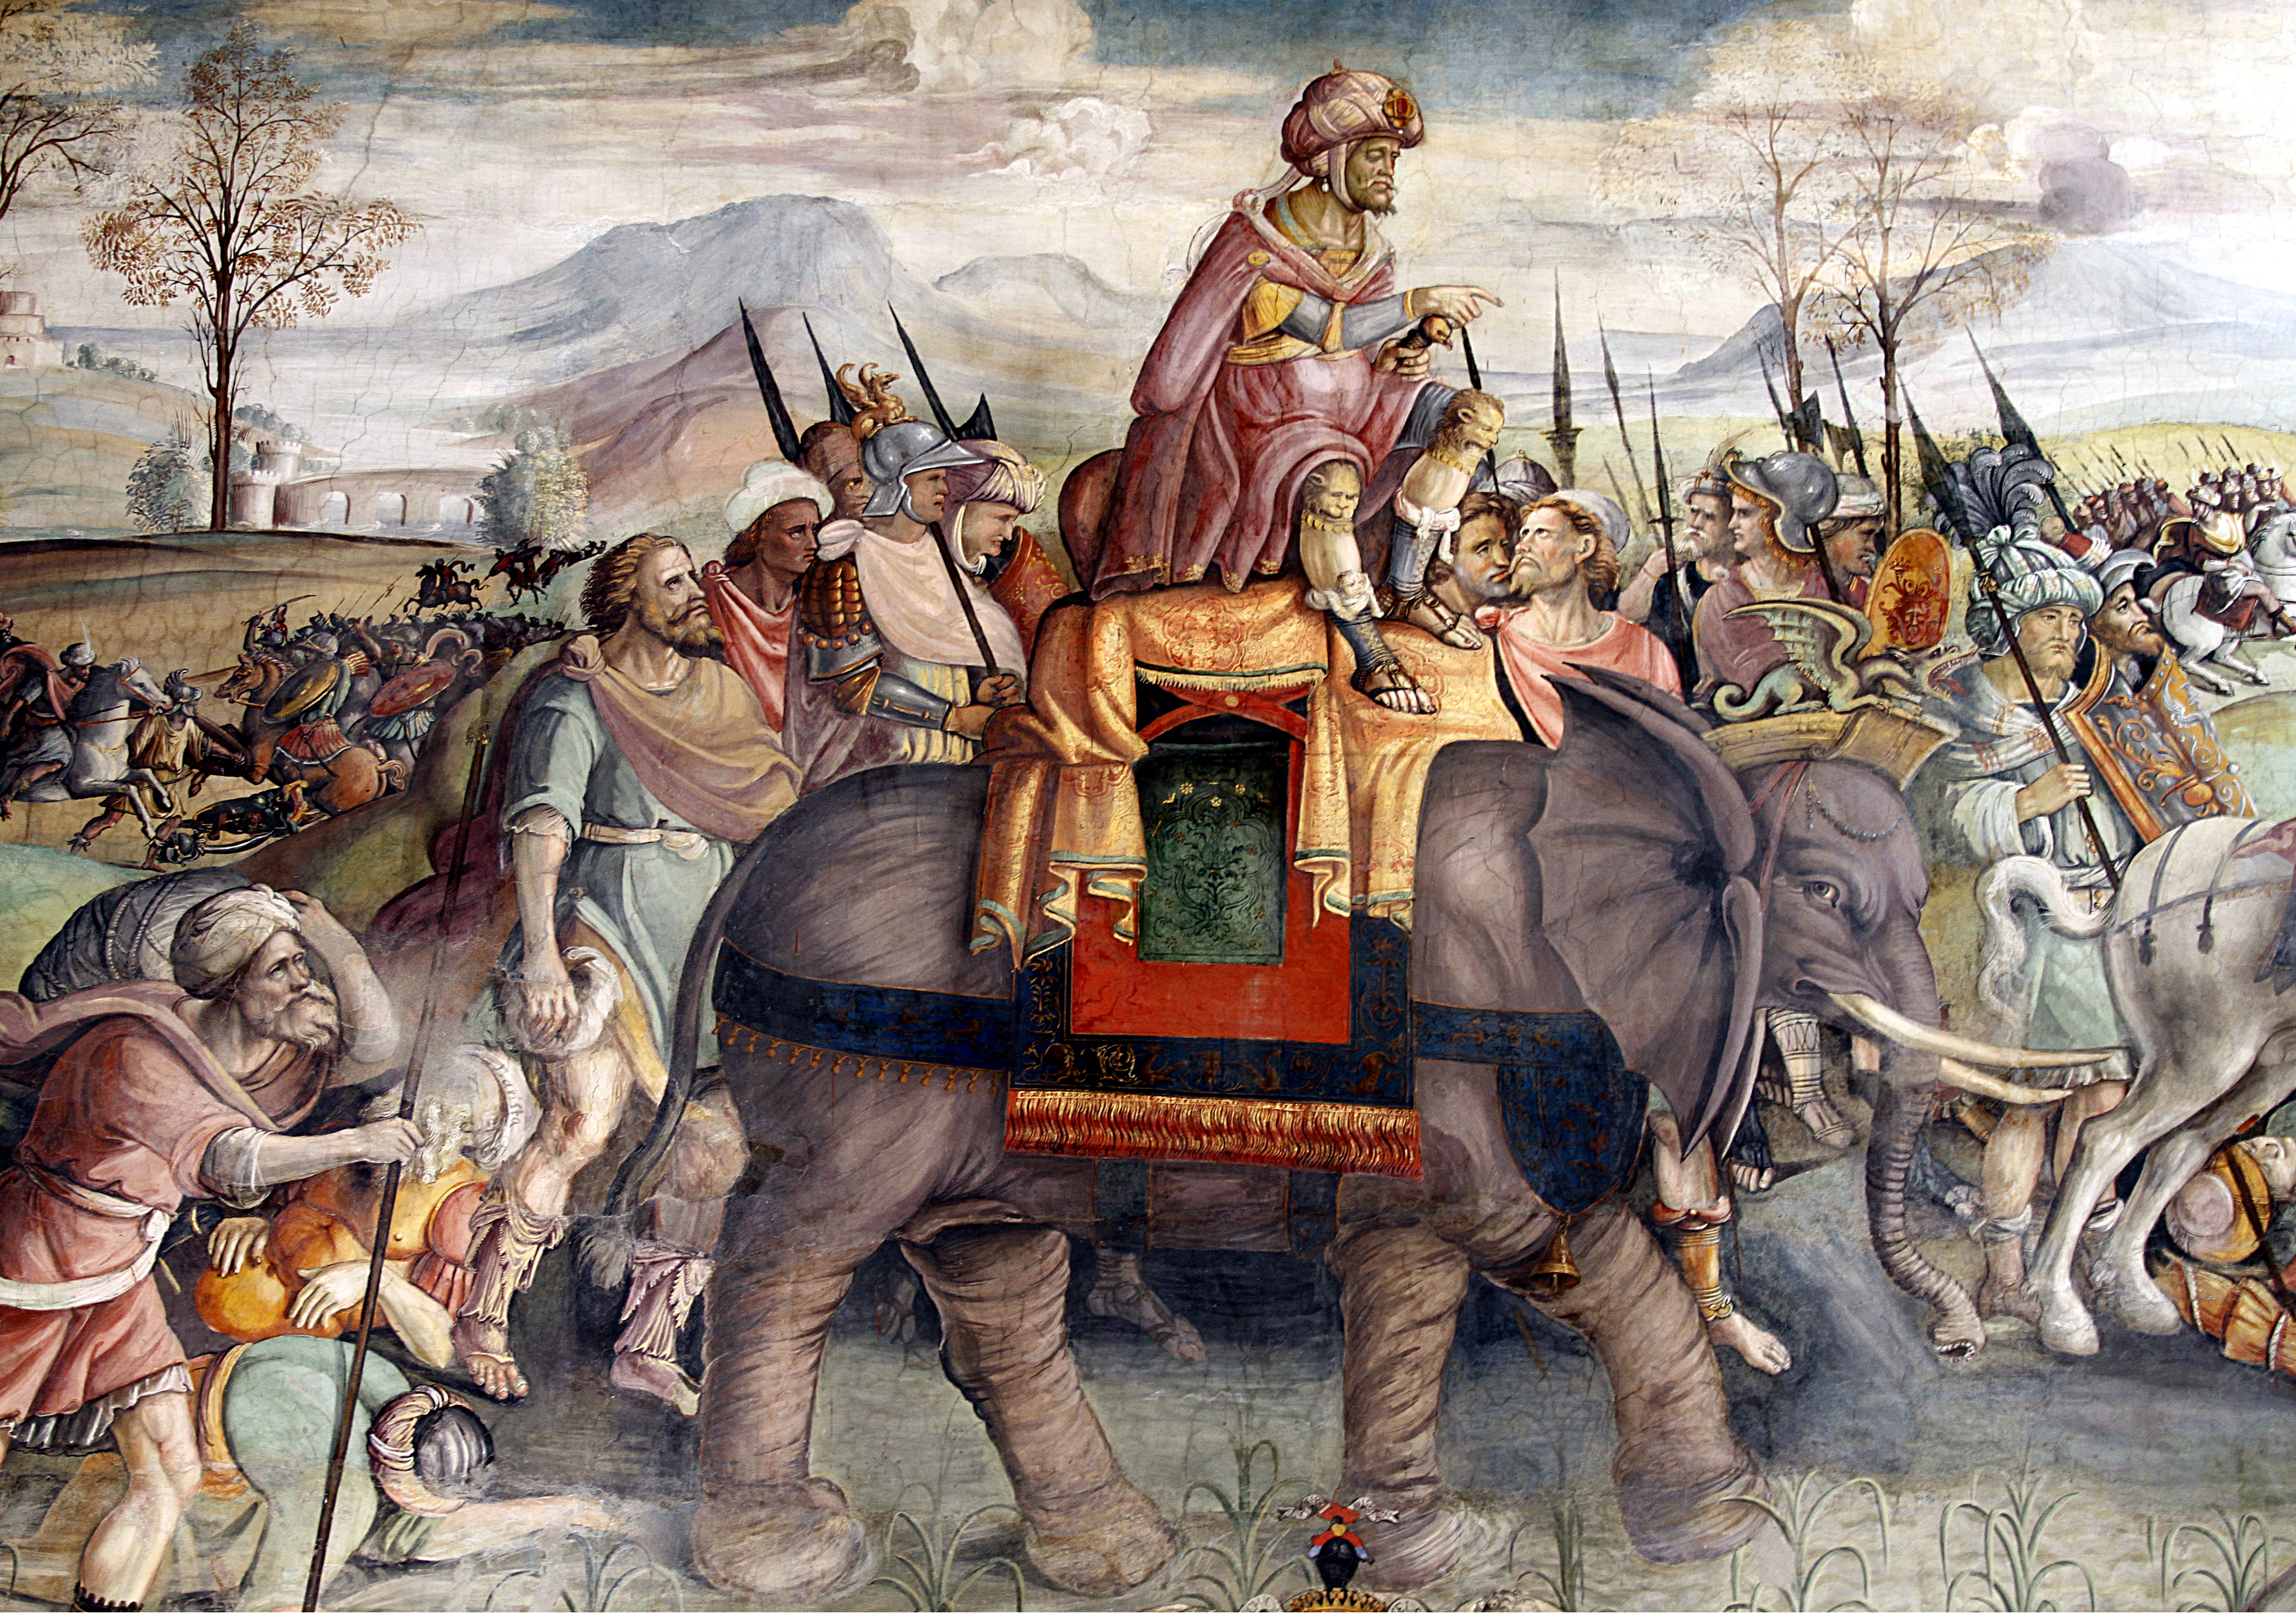 vojevůdce Hannibal překračuje se svou armádou Alpy